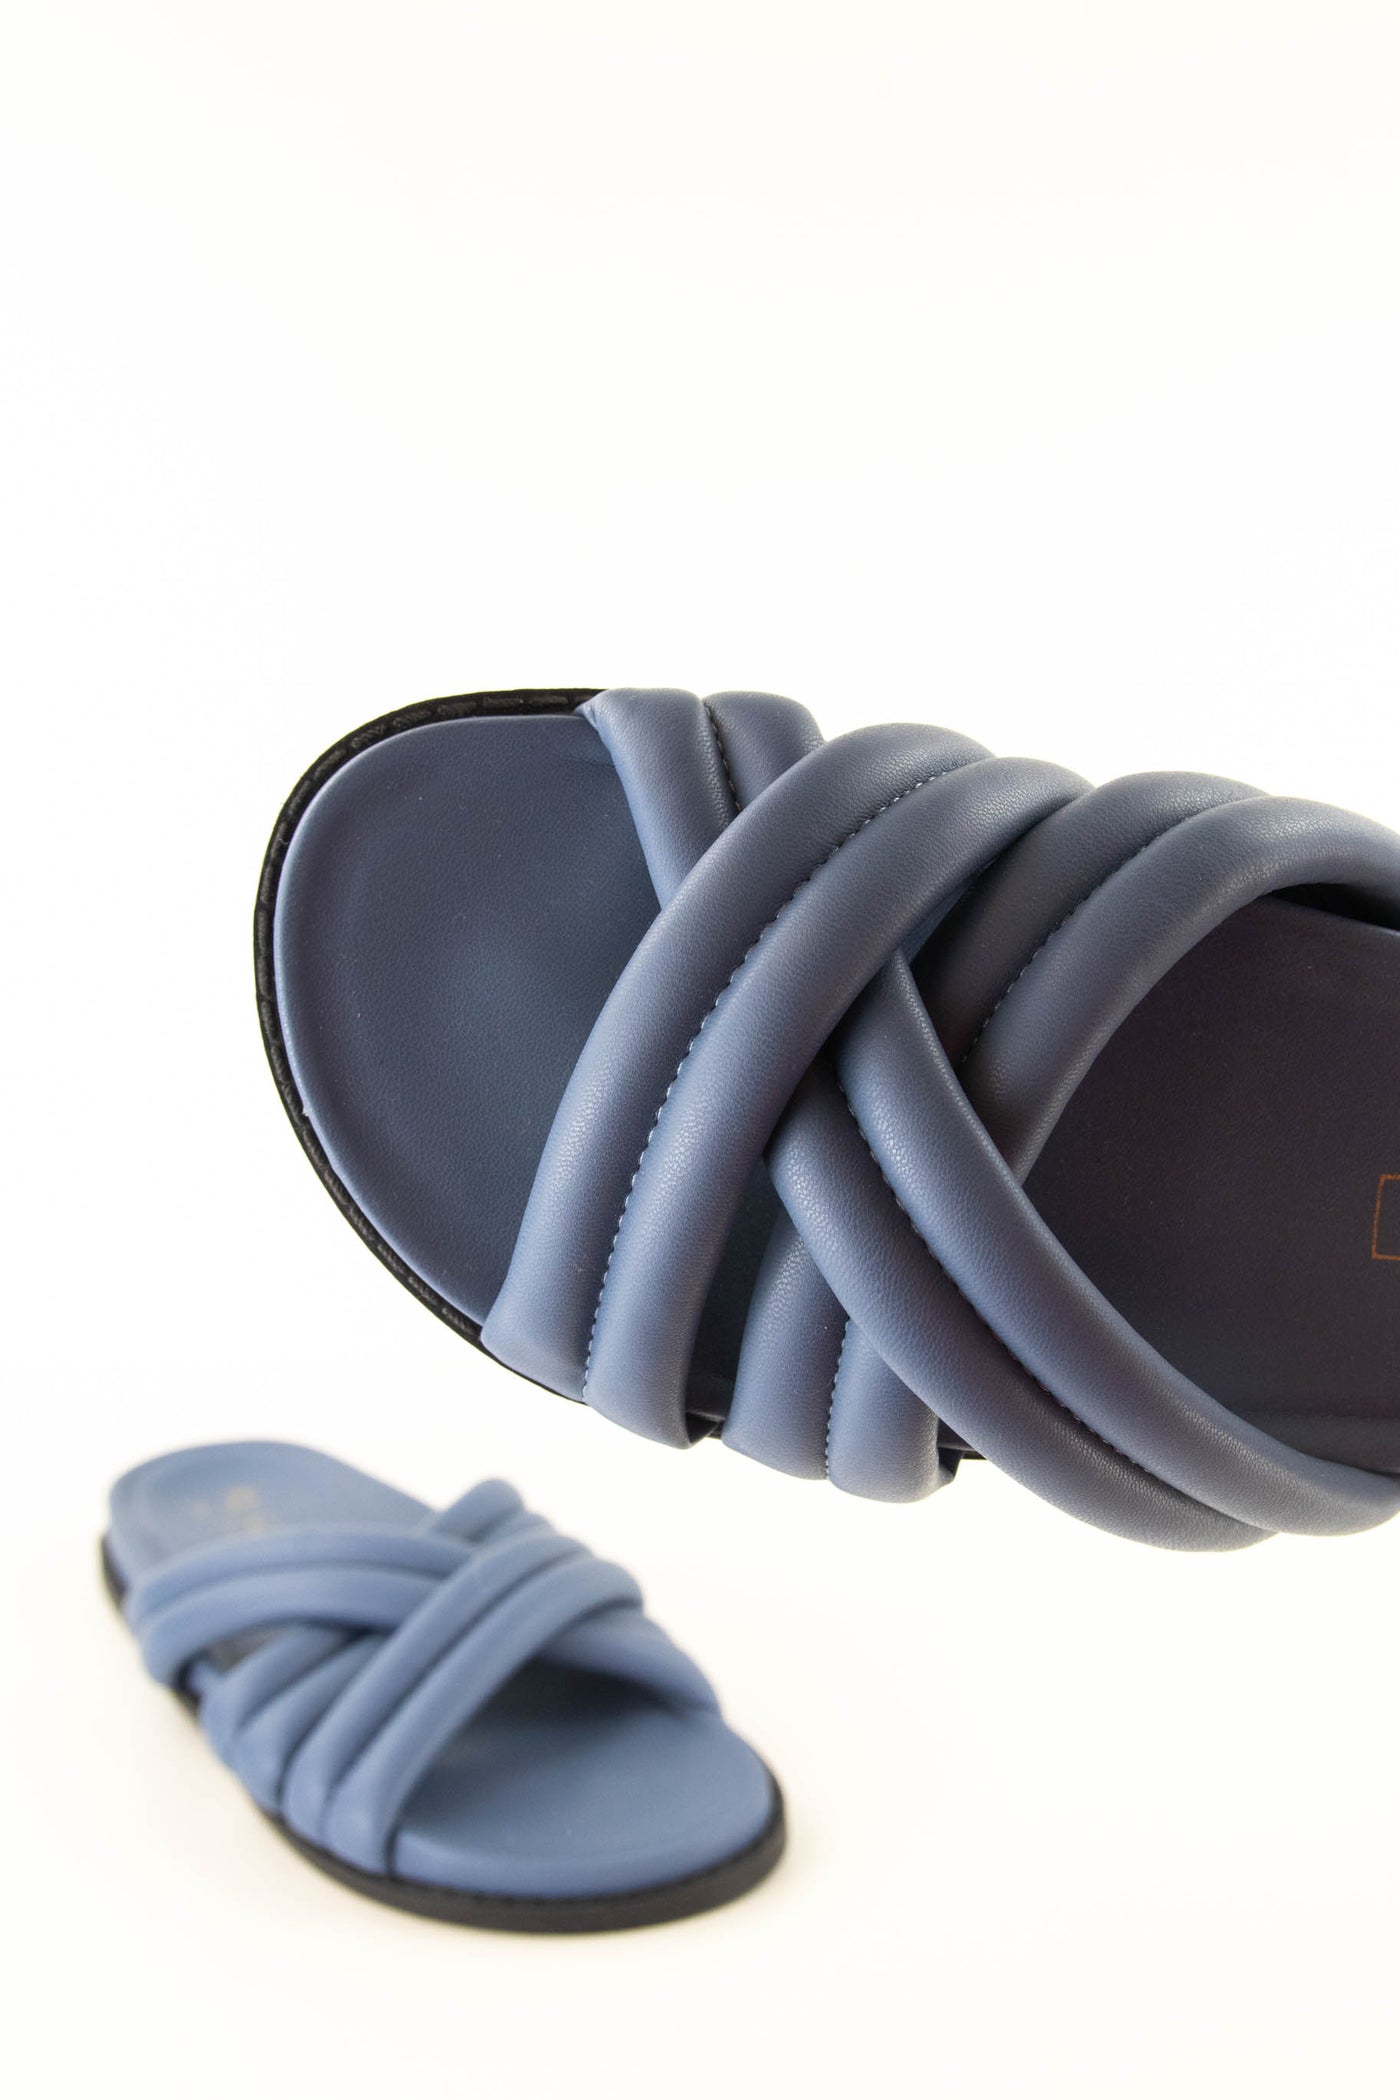 Sandalias acolchadas azules